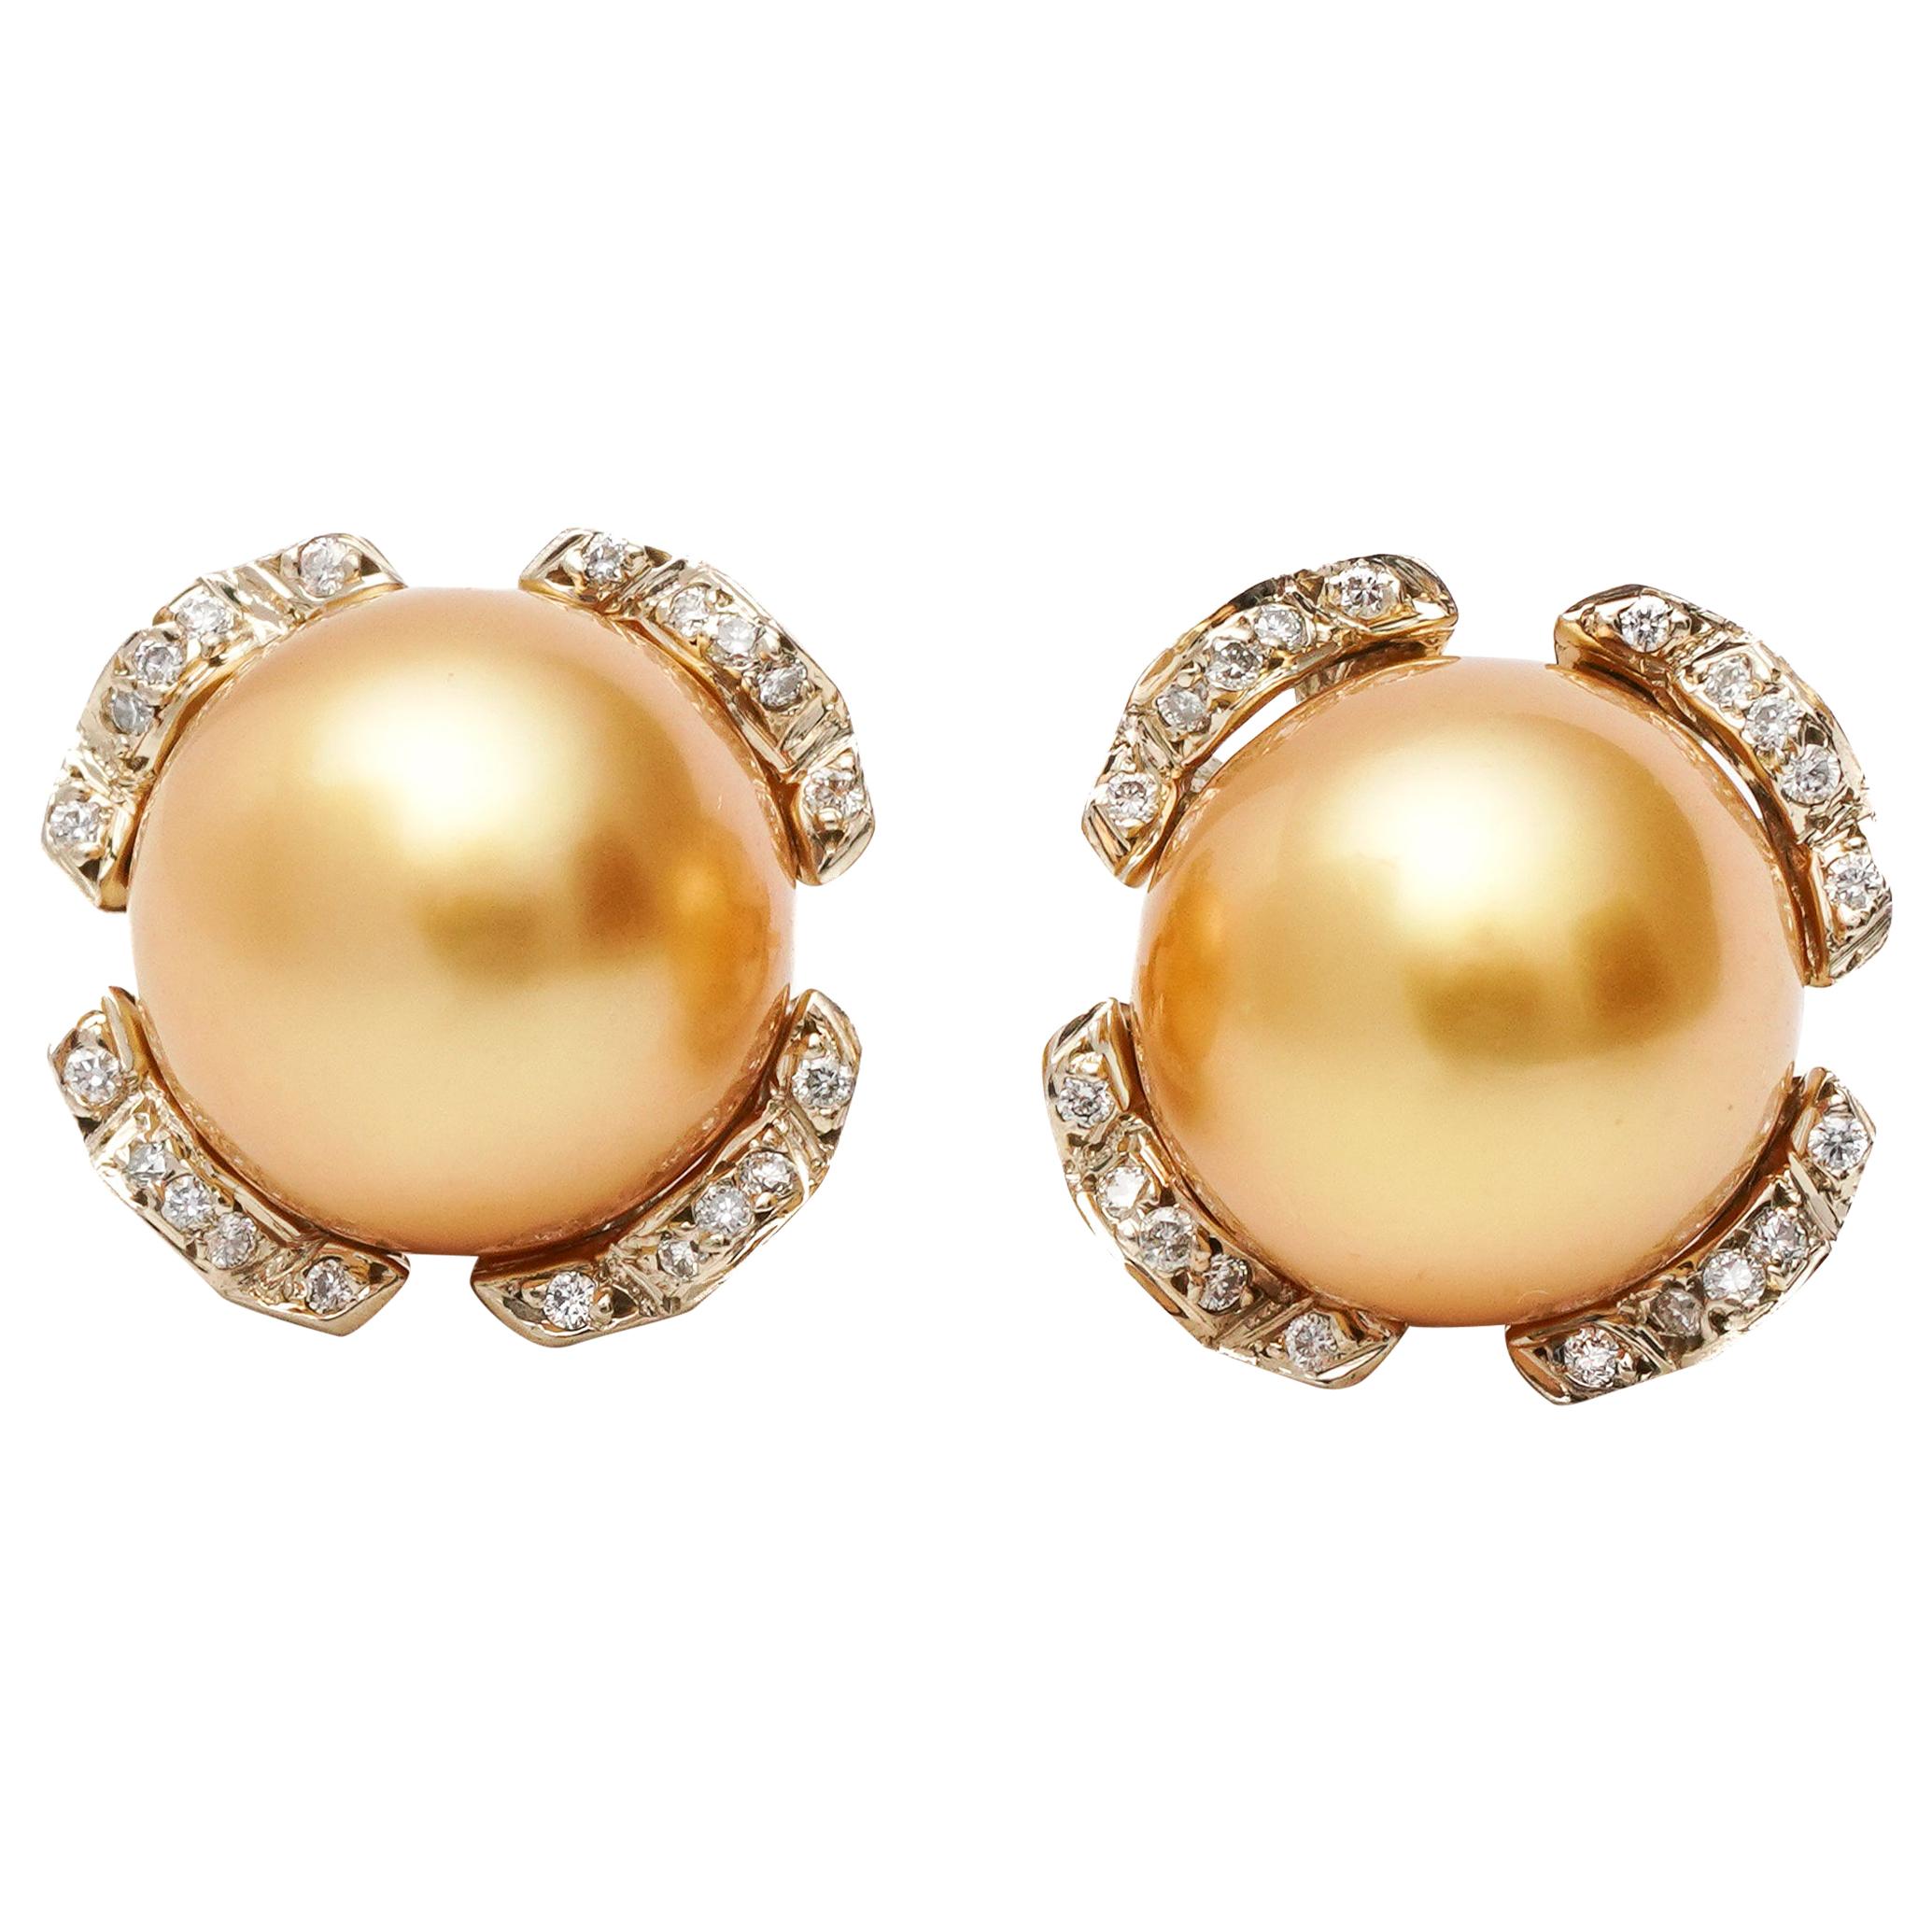 Mikimoto Pearl and Diamond Earrings in 18 Karat Two-Tone Gold